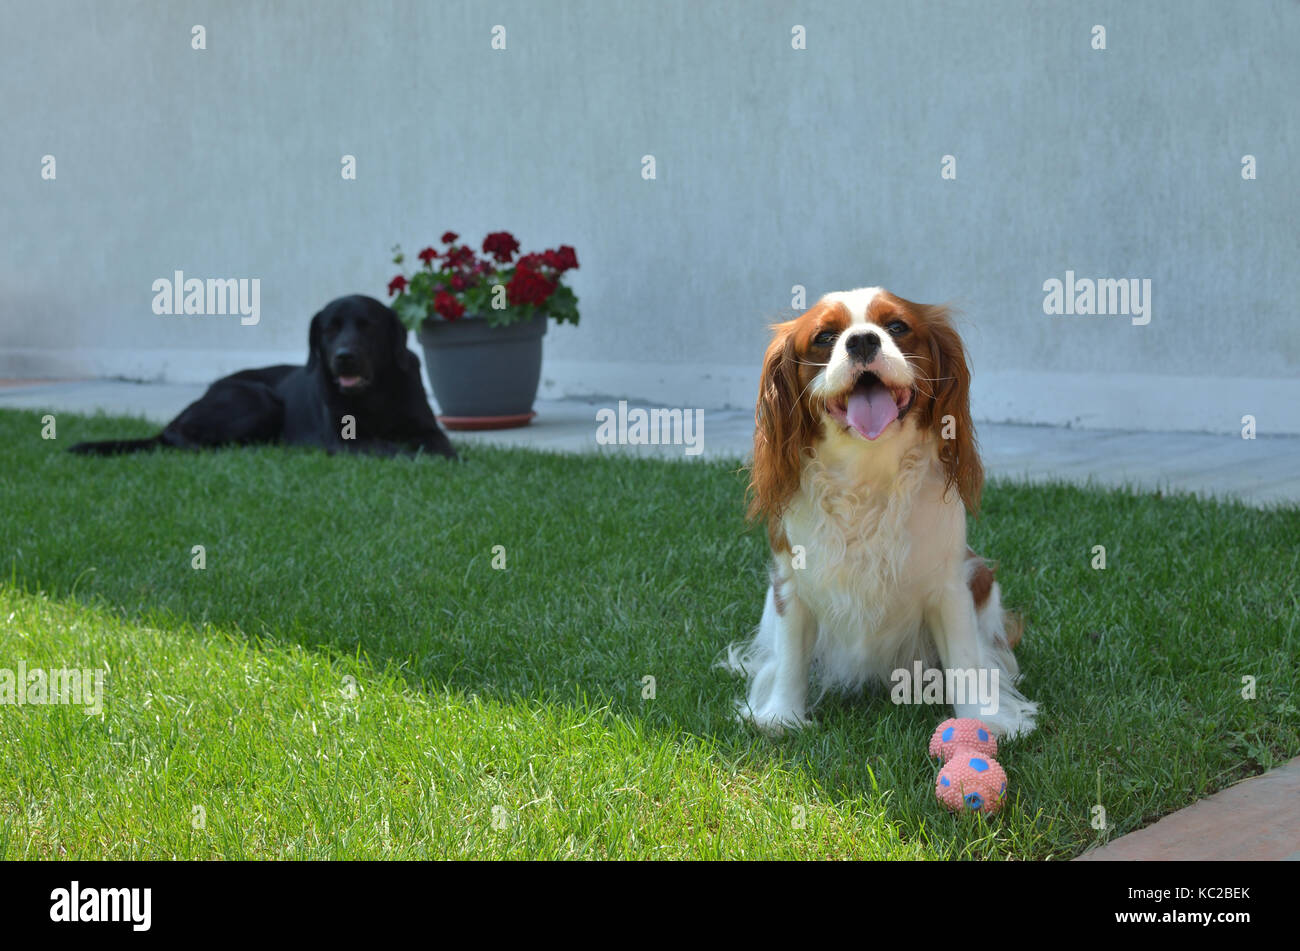 Bel cane - Cavalier King Charles Spaniel - con il suo giocattolo su un prato mentre un altro grande cane nero giace dietro Foto Stock